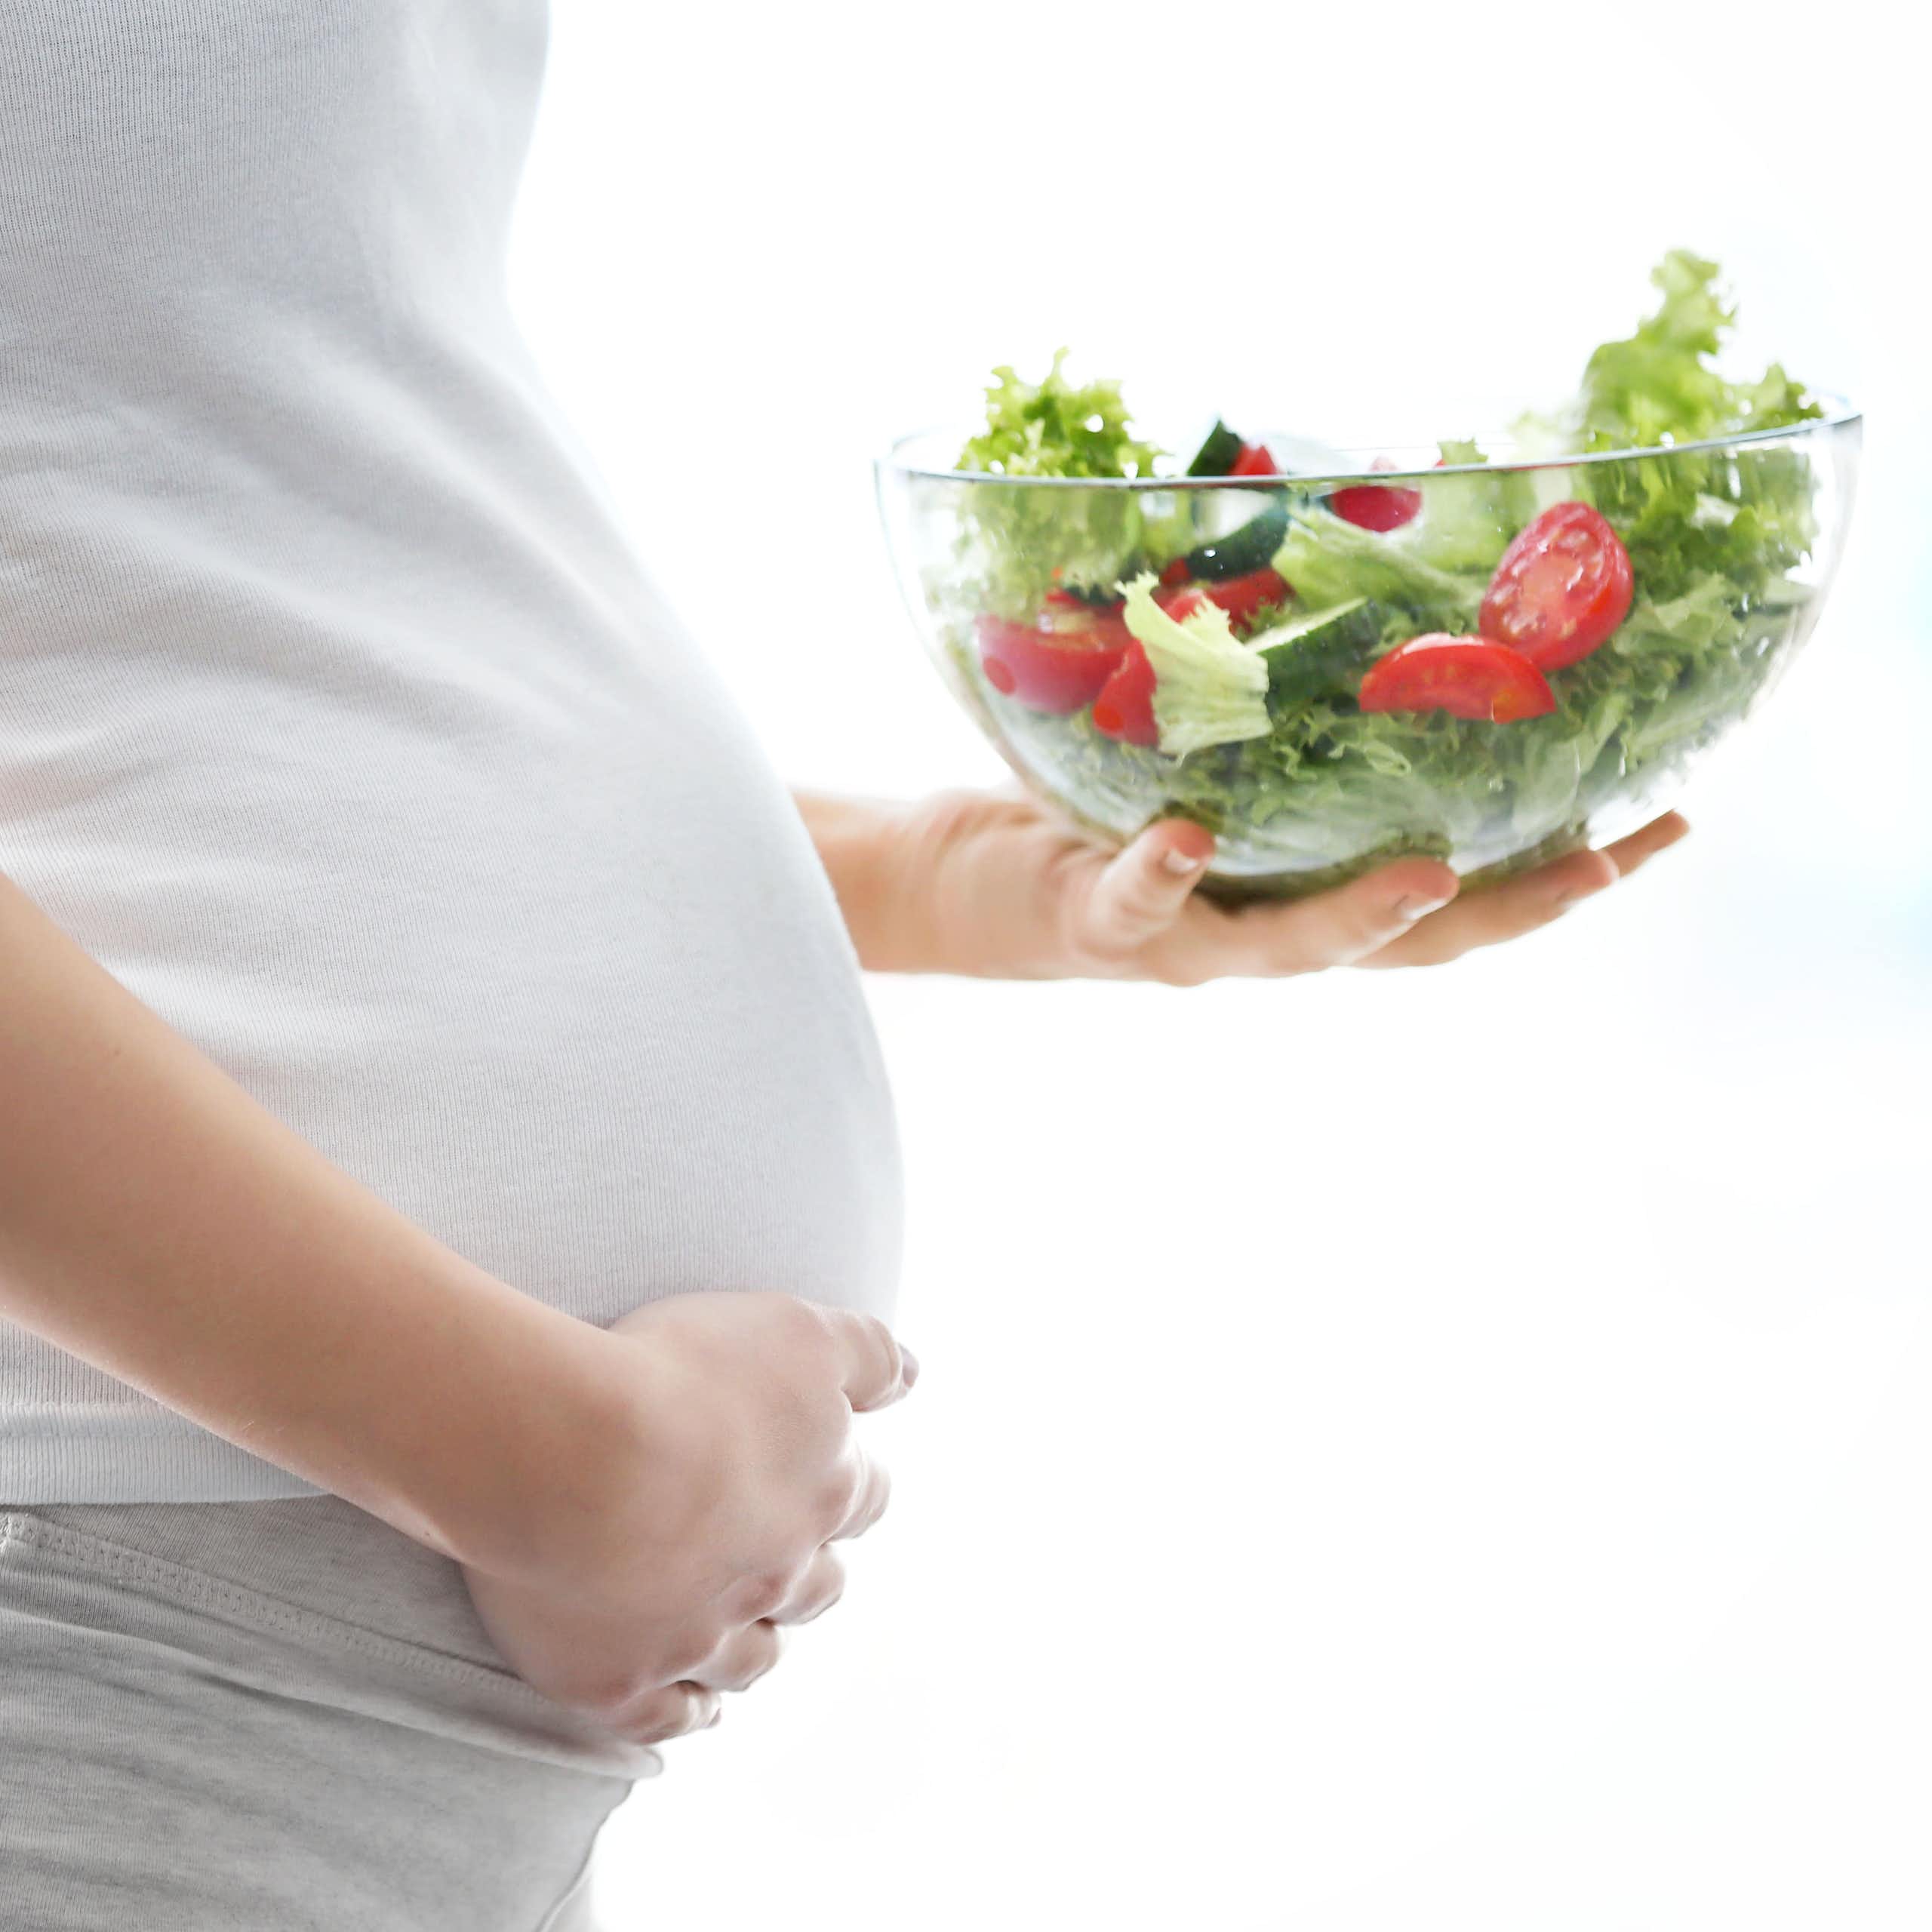 Une femme enceinte de profil tient son ventre d'une main et un bol contenant une salade de crudités de l'autre main.